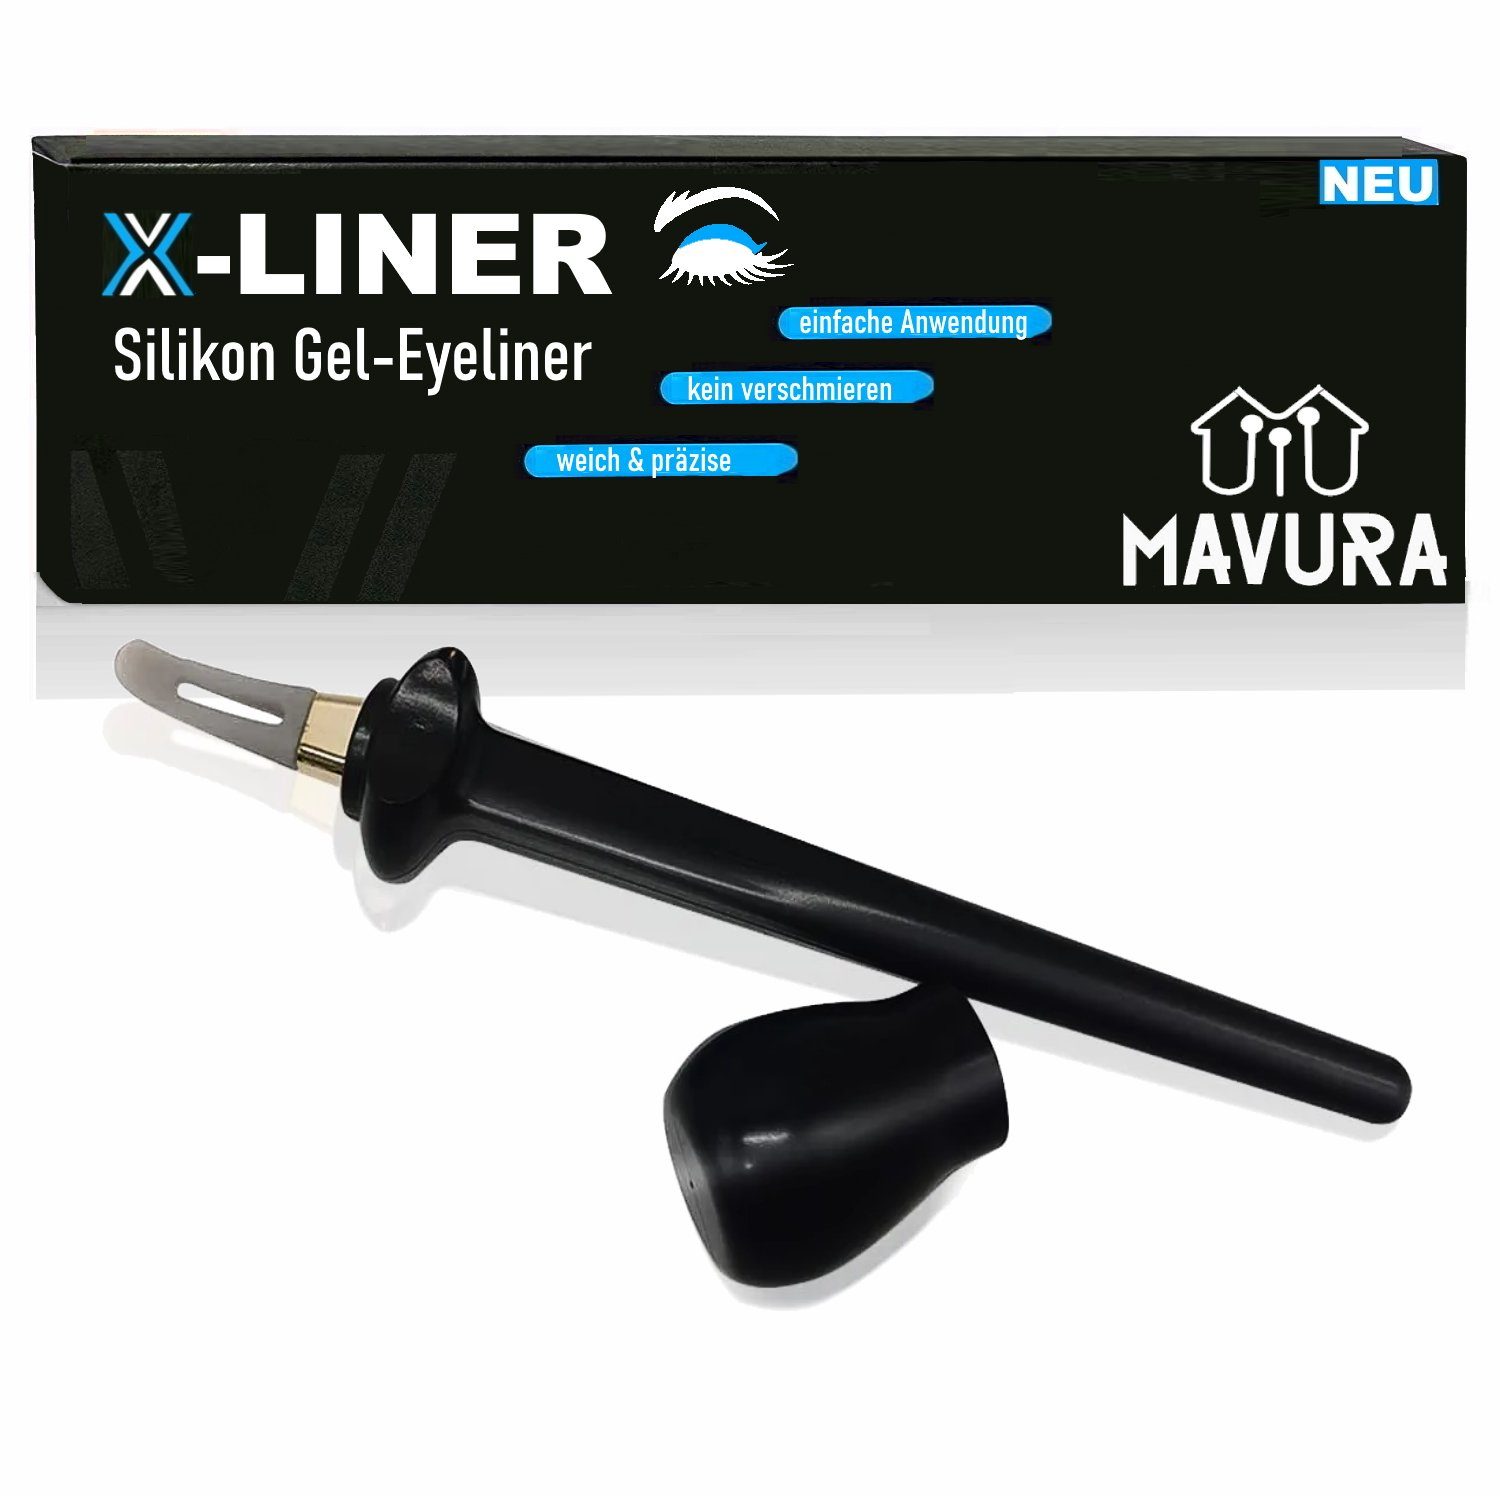 MAVURA Eyelinerpinsel X-Liner Silikon wischfester Eyeliner Tool Gel Schablone Eye-Liner Stift wasserfest Zeichner